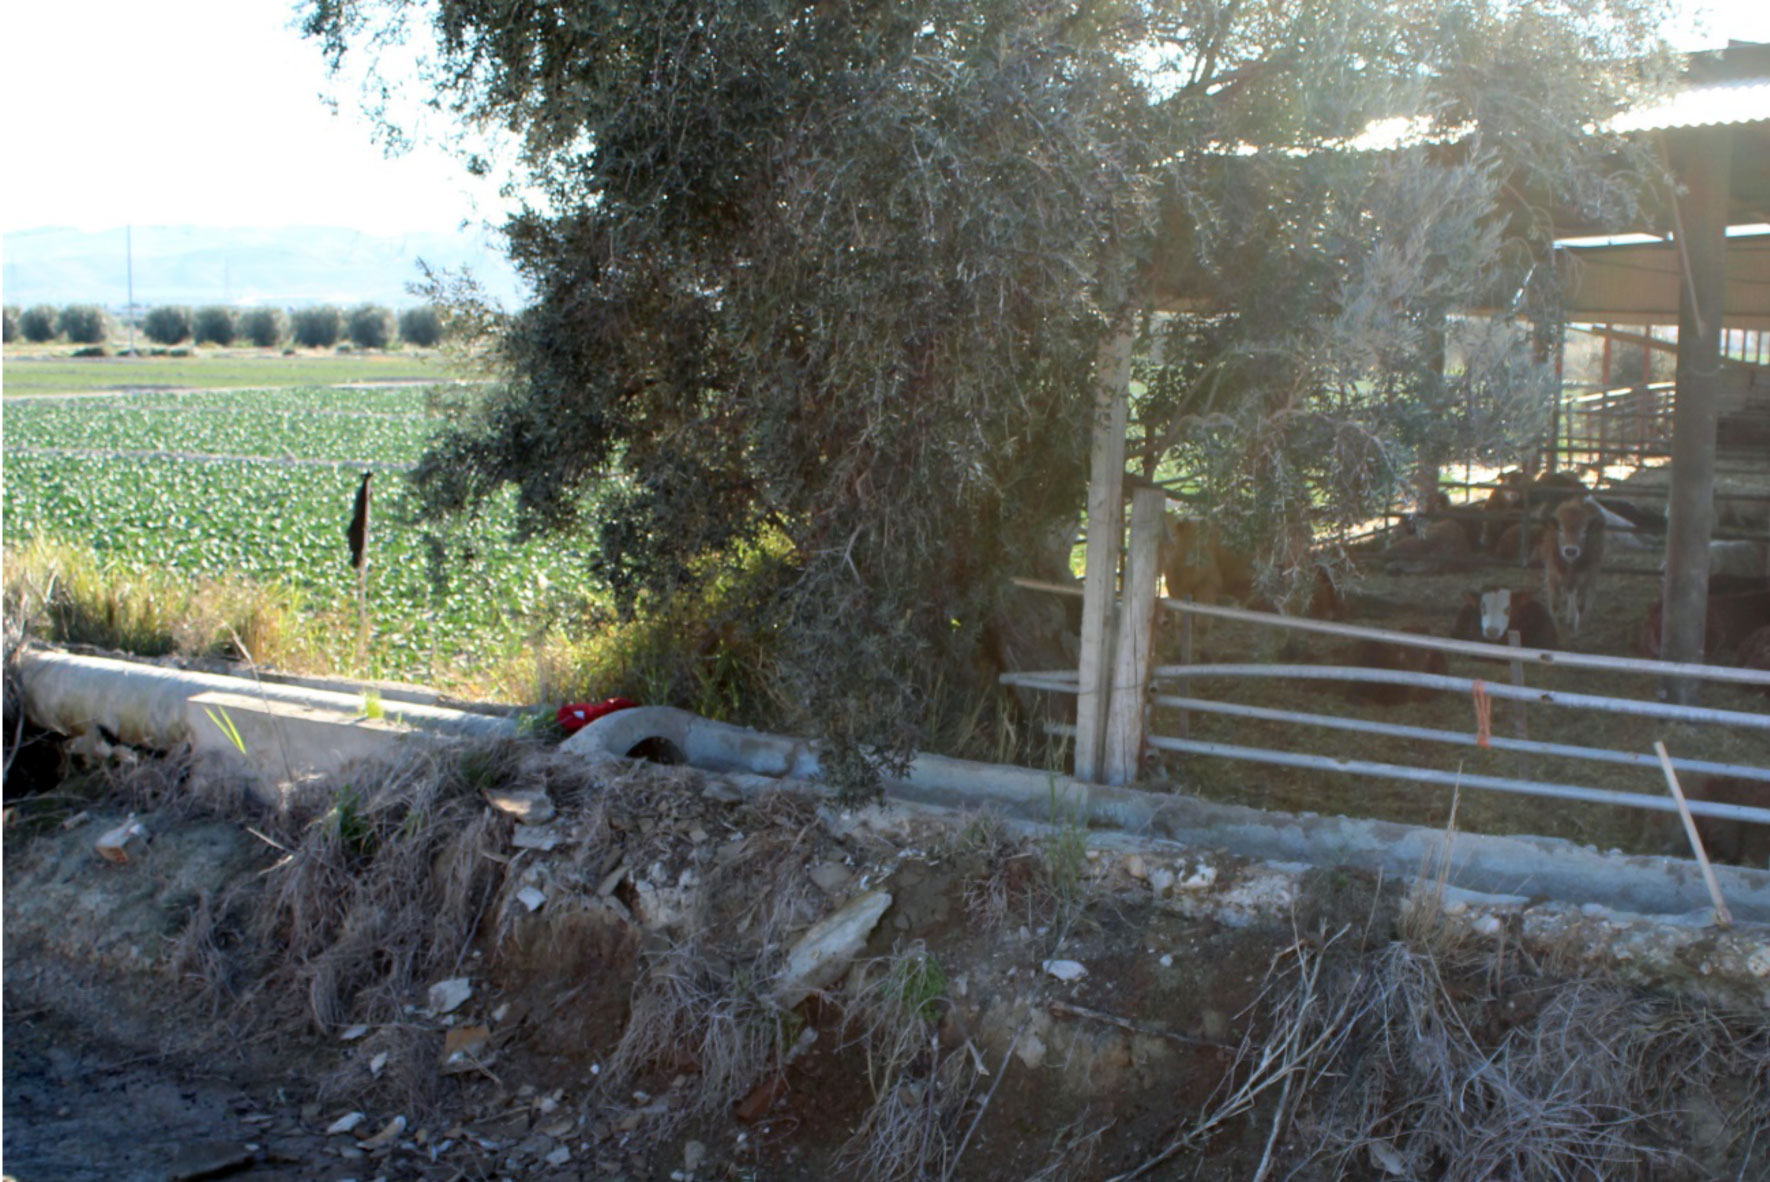 Foto 3. Canal de riego de aguas superficiales ubicado junto a una granja de ganado lo que supone un factor de riesgo elevado...